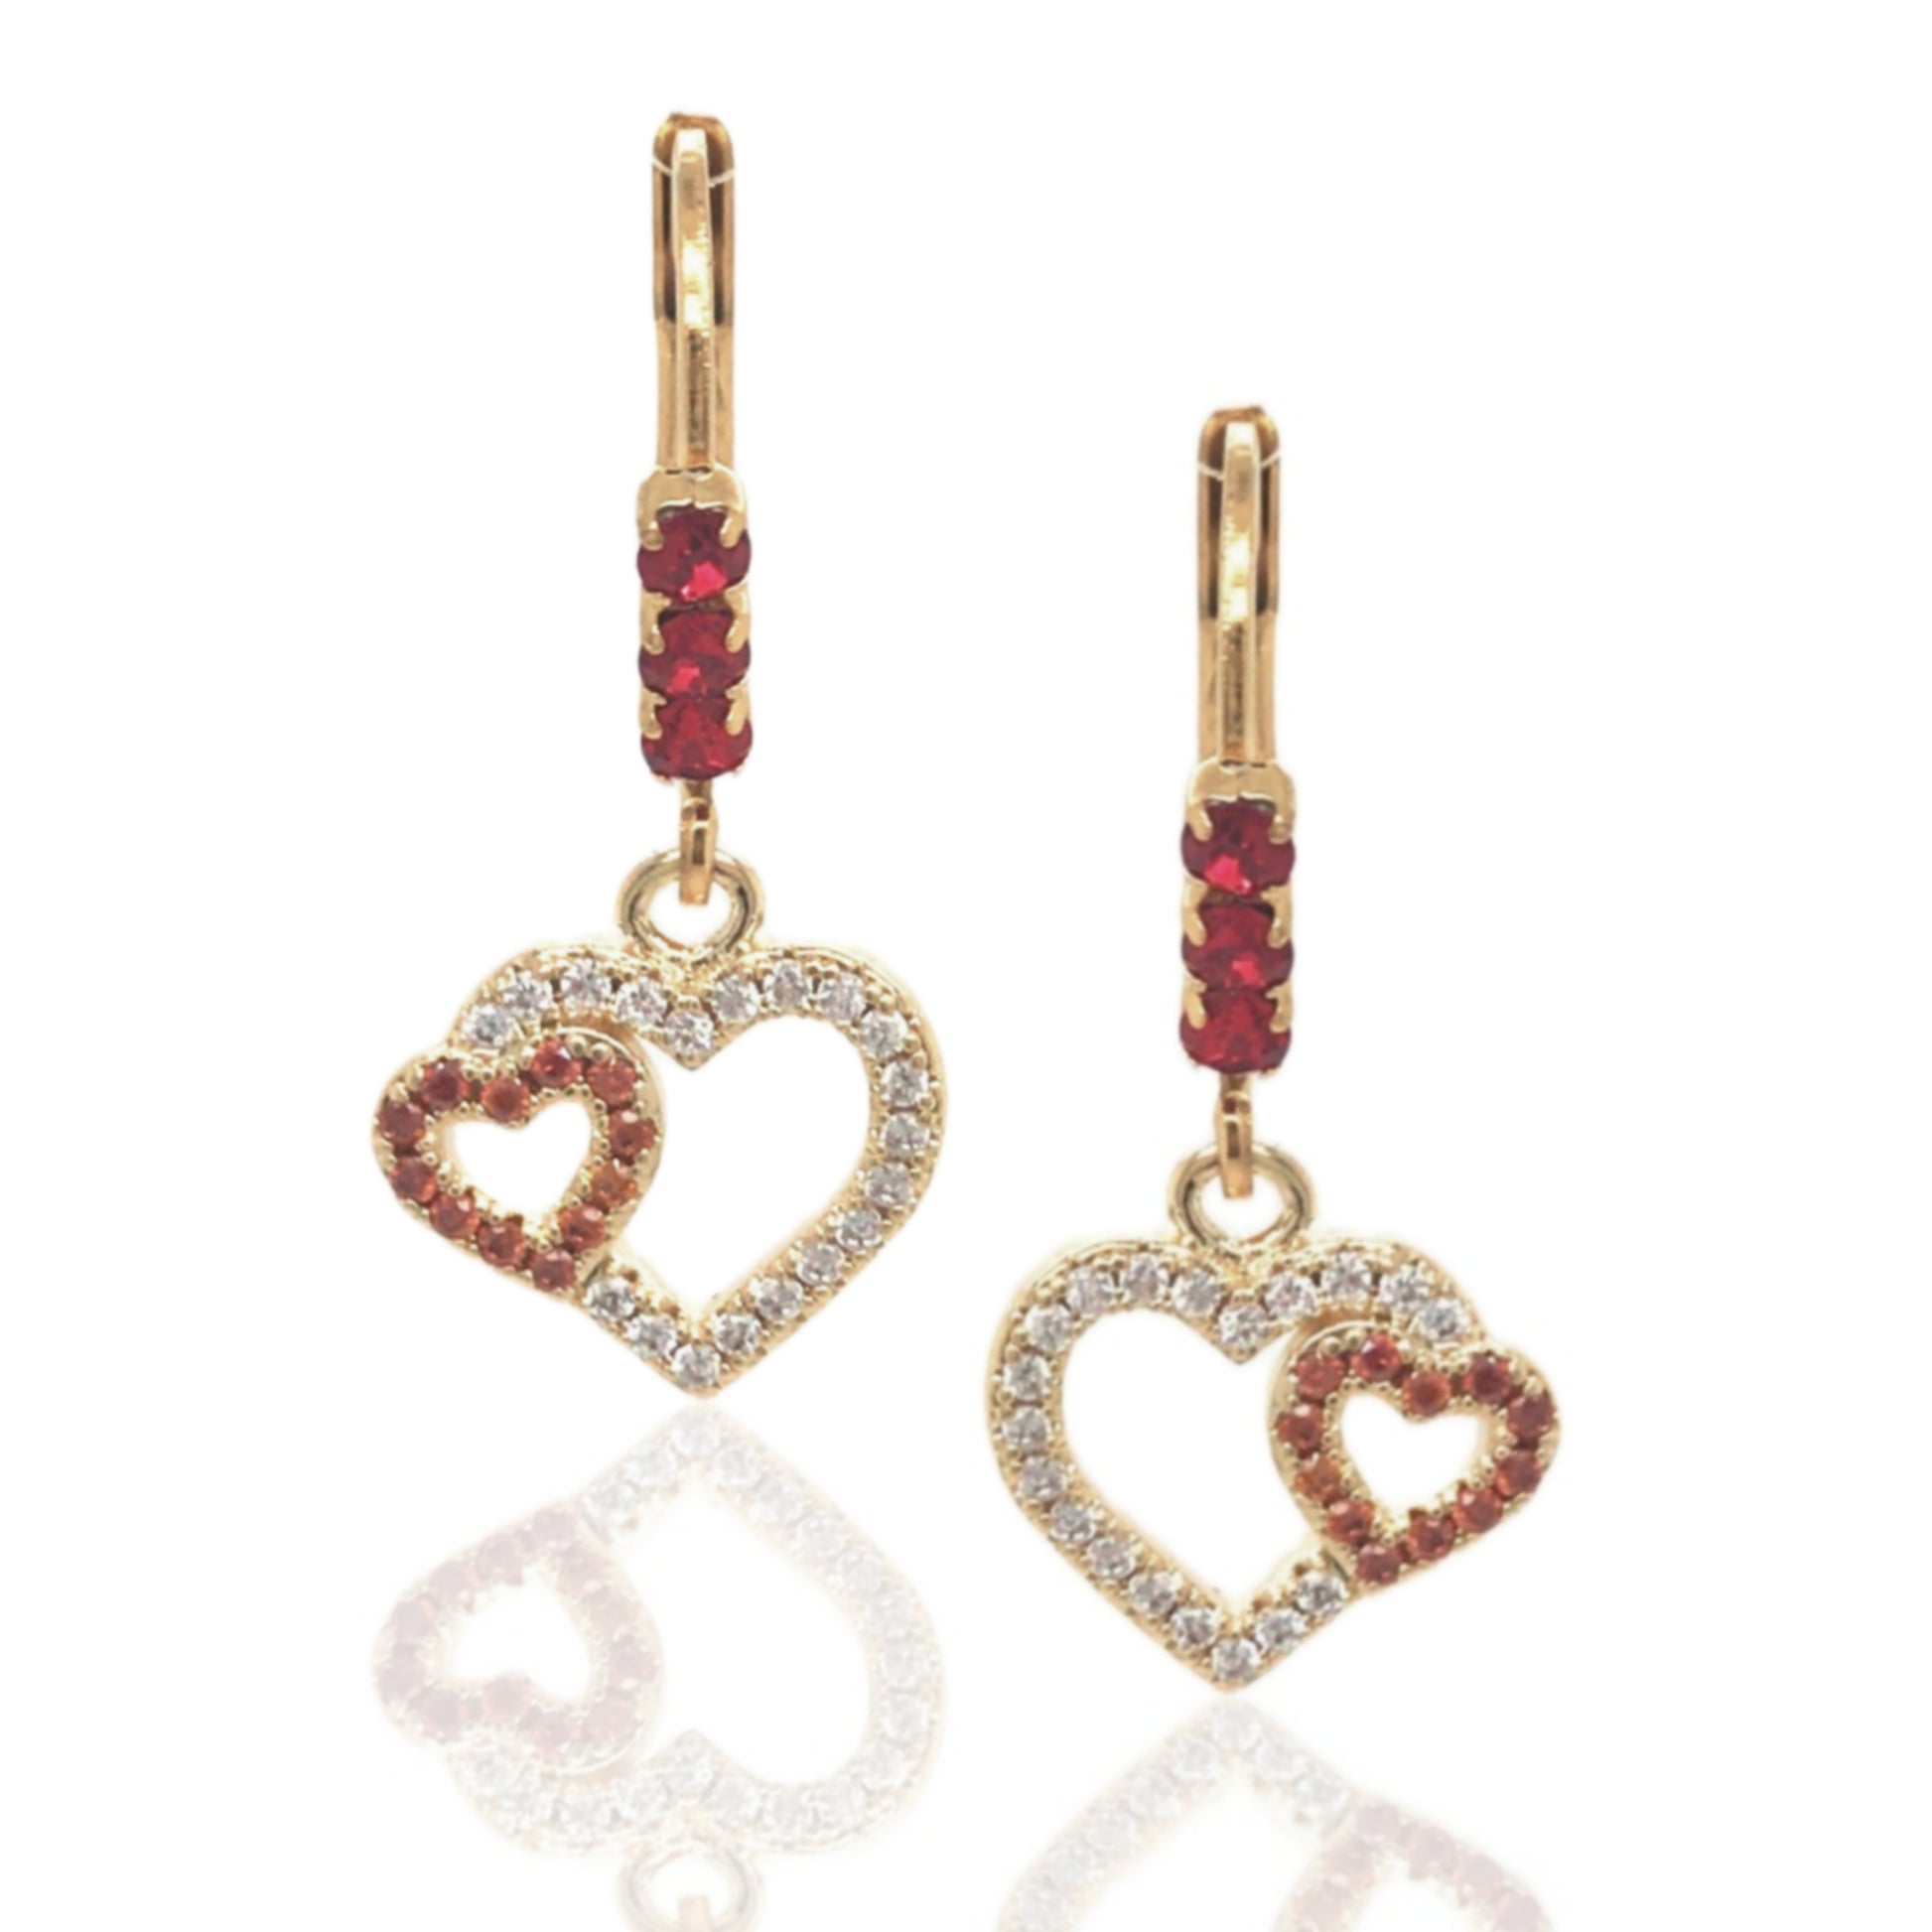 Double Heart Micropave Earrings - HK Jewels